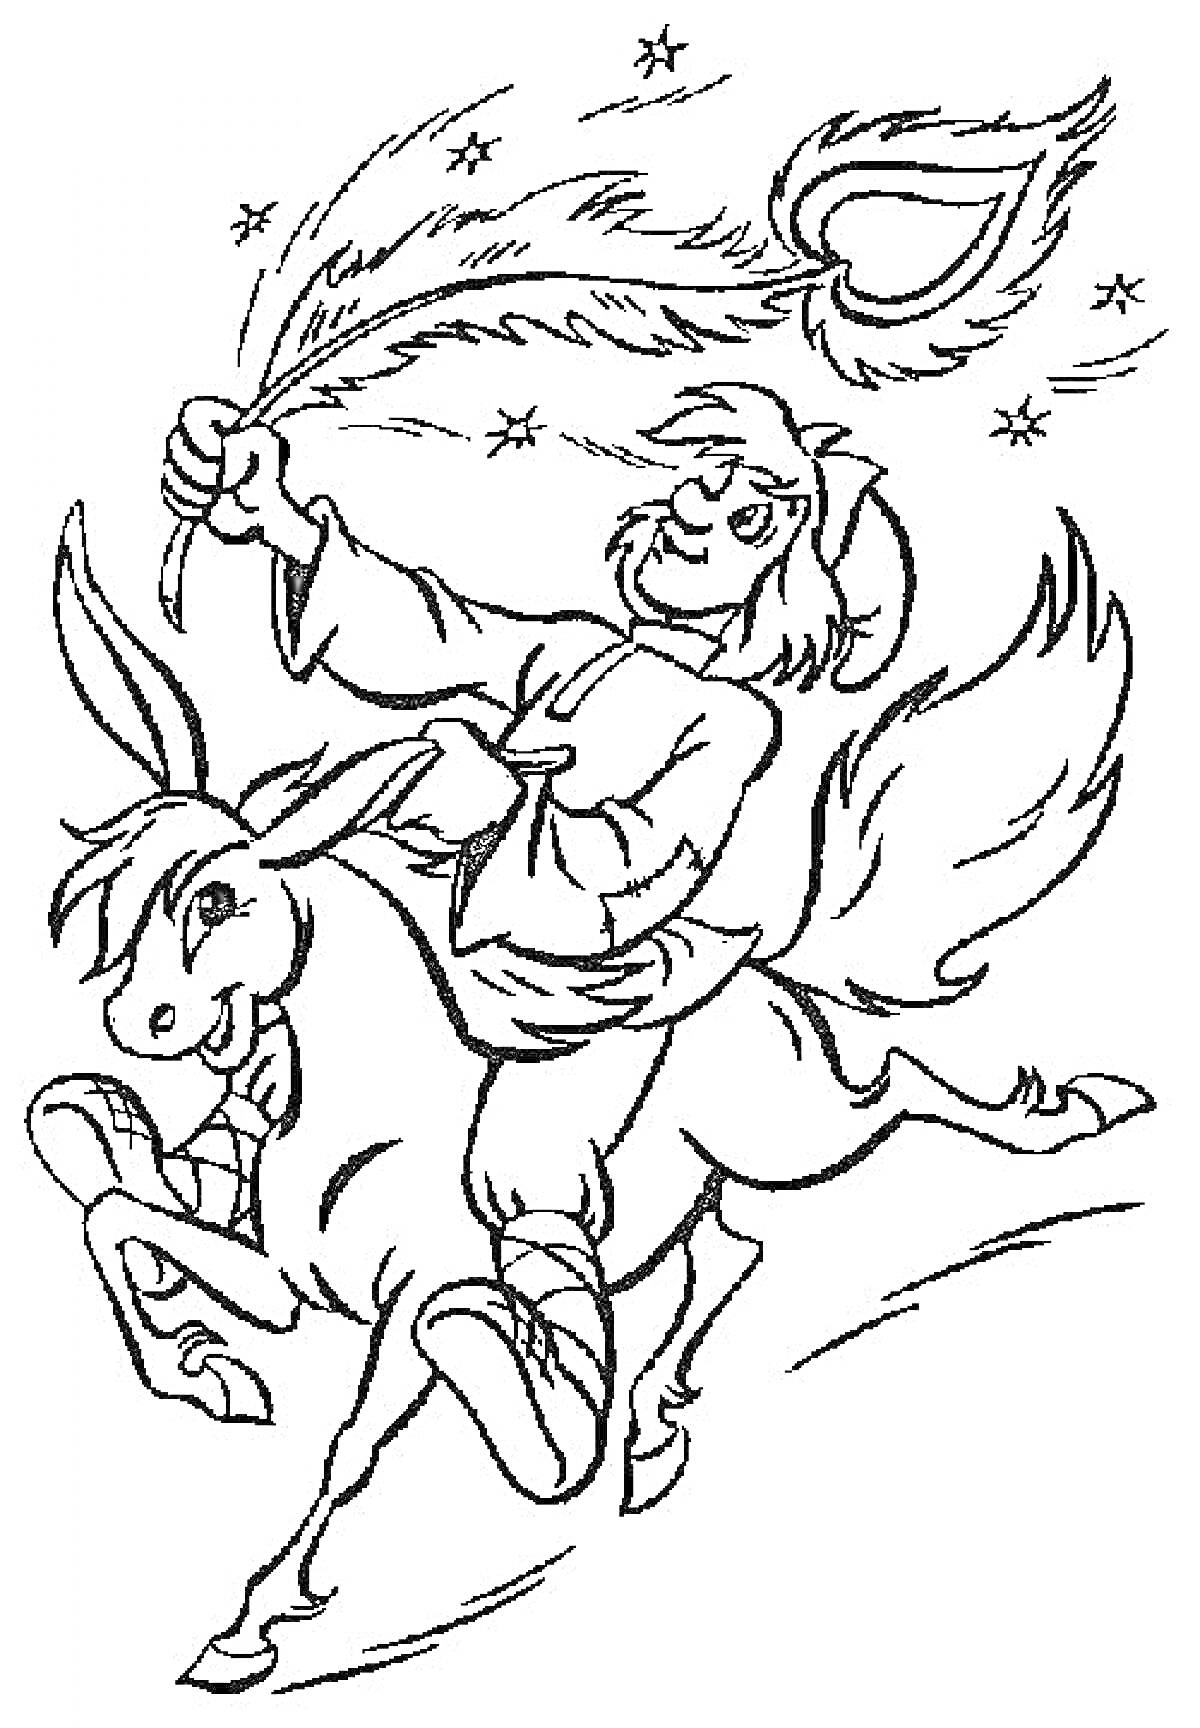 Человек верхом на коне с пером Жар-Птицы в руке